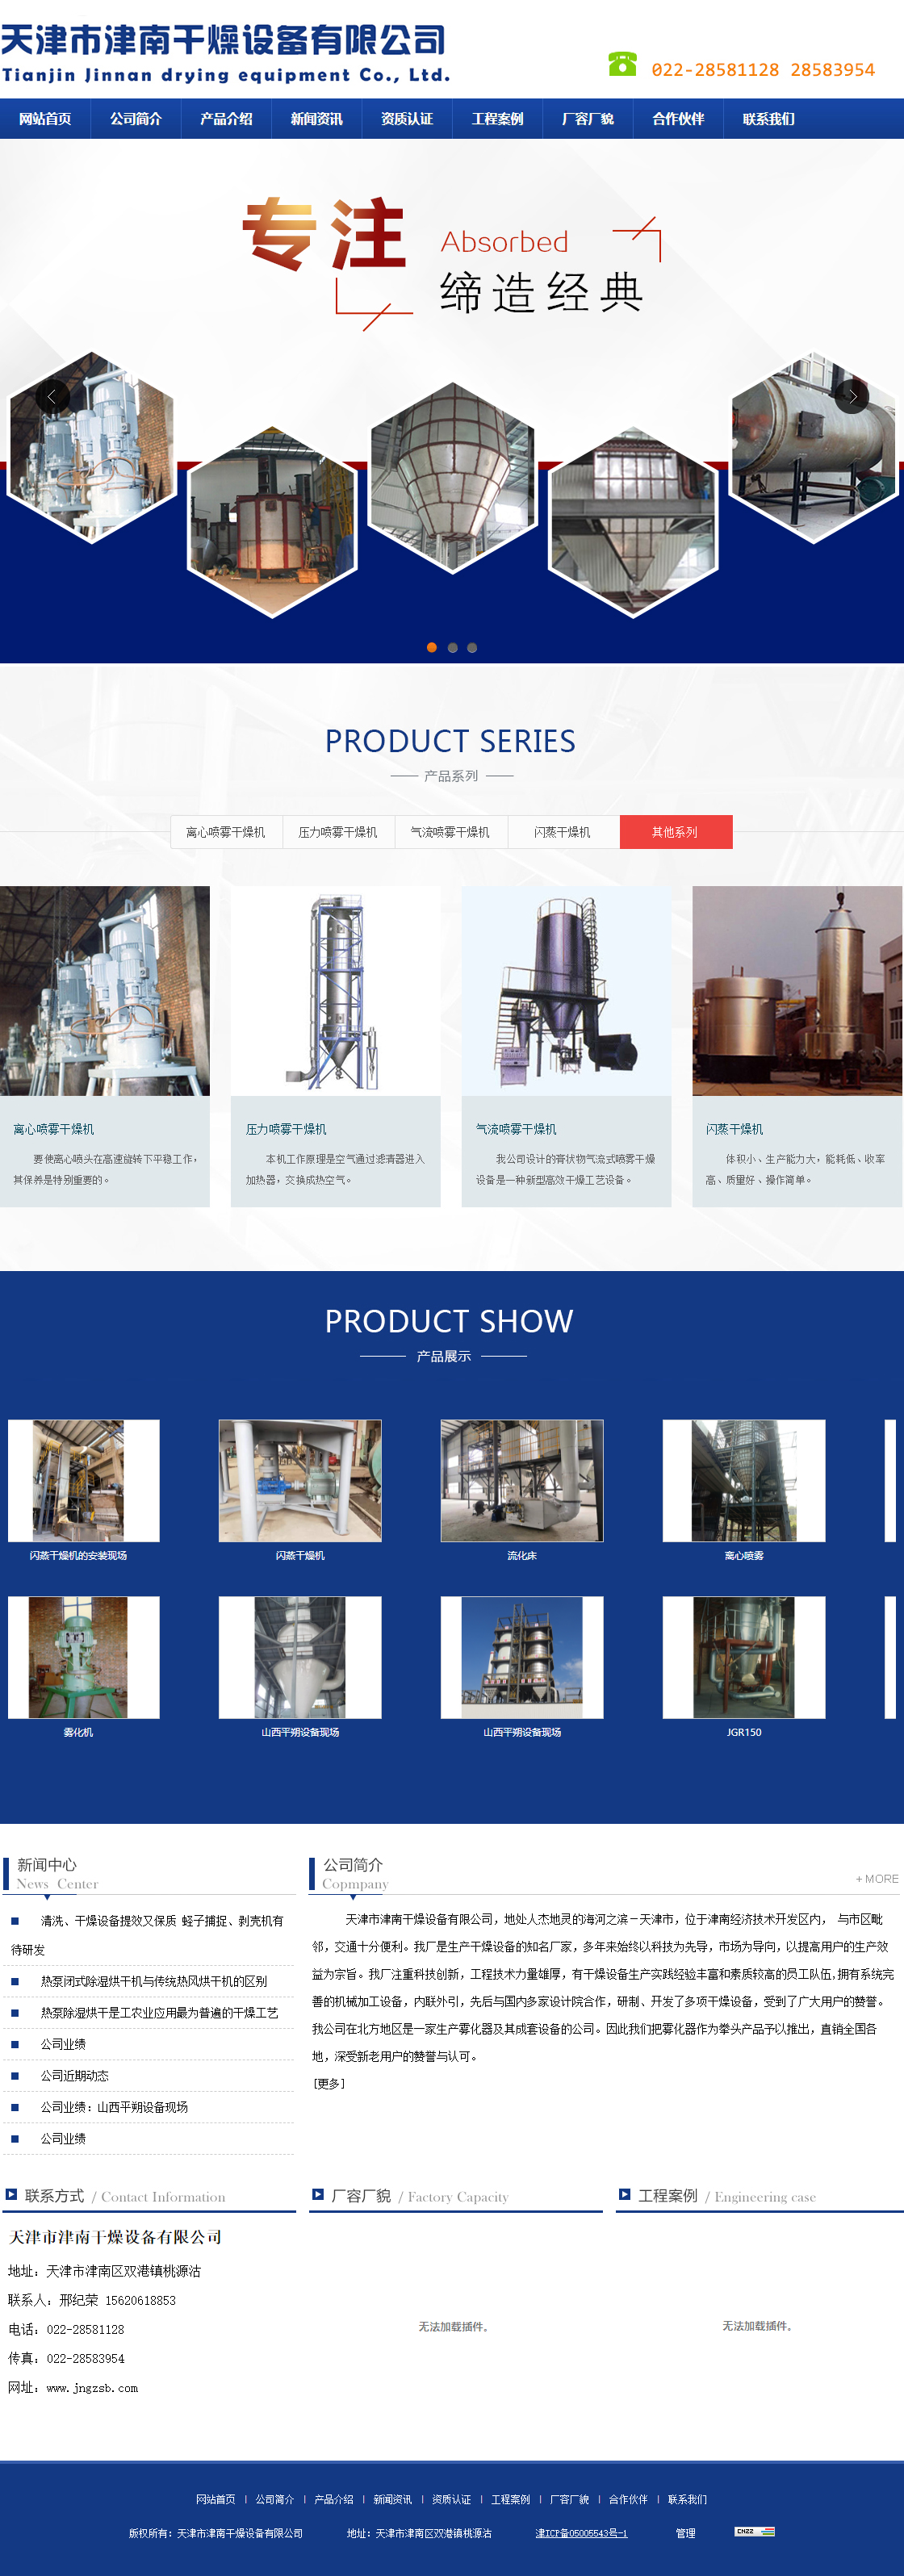 天津市津南干燥设备有限公司网站案例